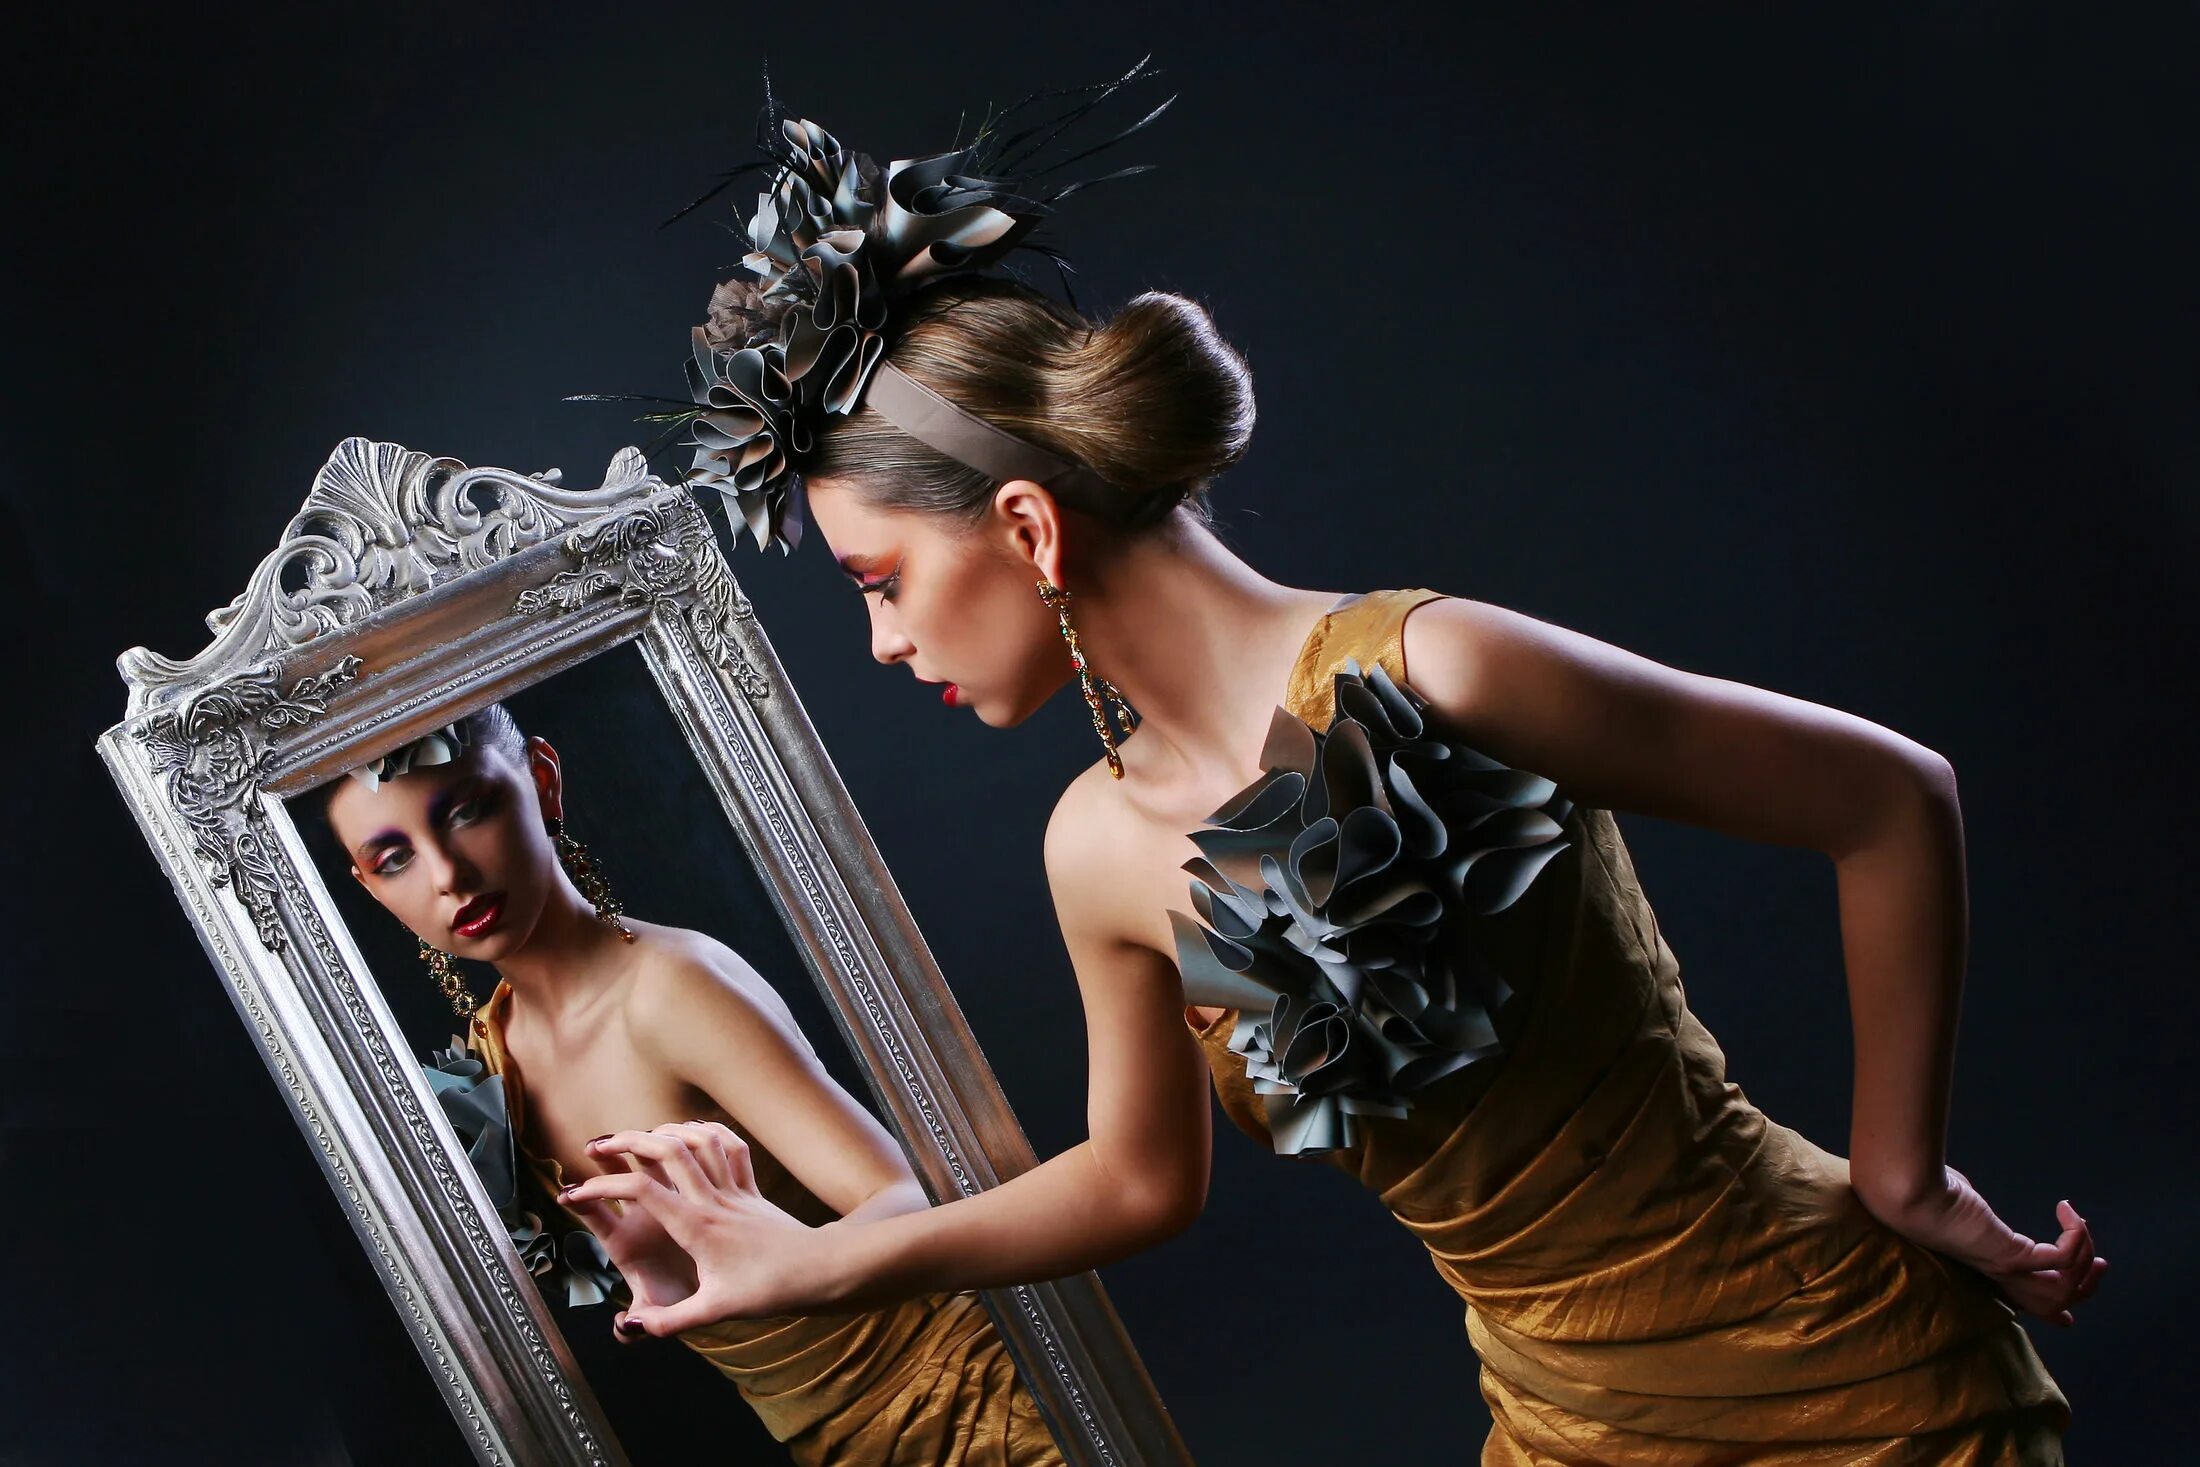 Женщина в зеркале. Фотосессия с зеркалом в студии. Красивое отражение в зеркале. Отражение девушки в зеркале.